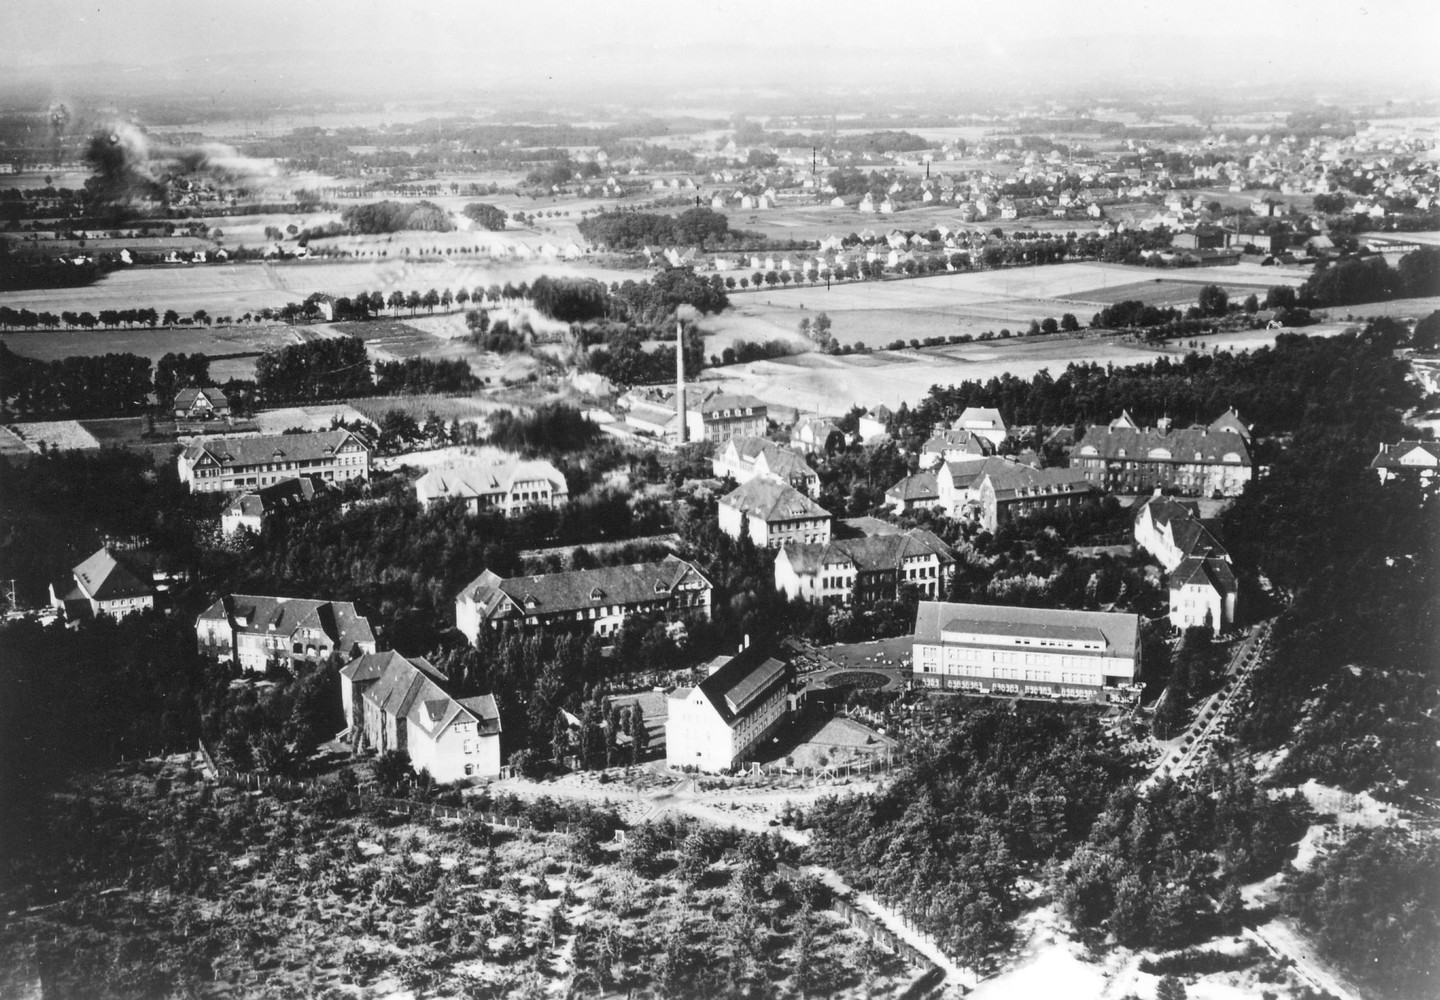 Luftbild des Geländes um 1938